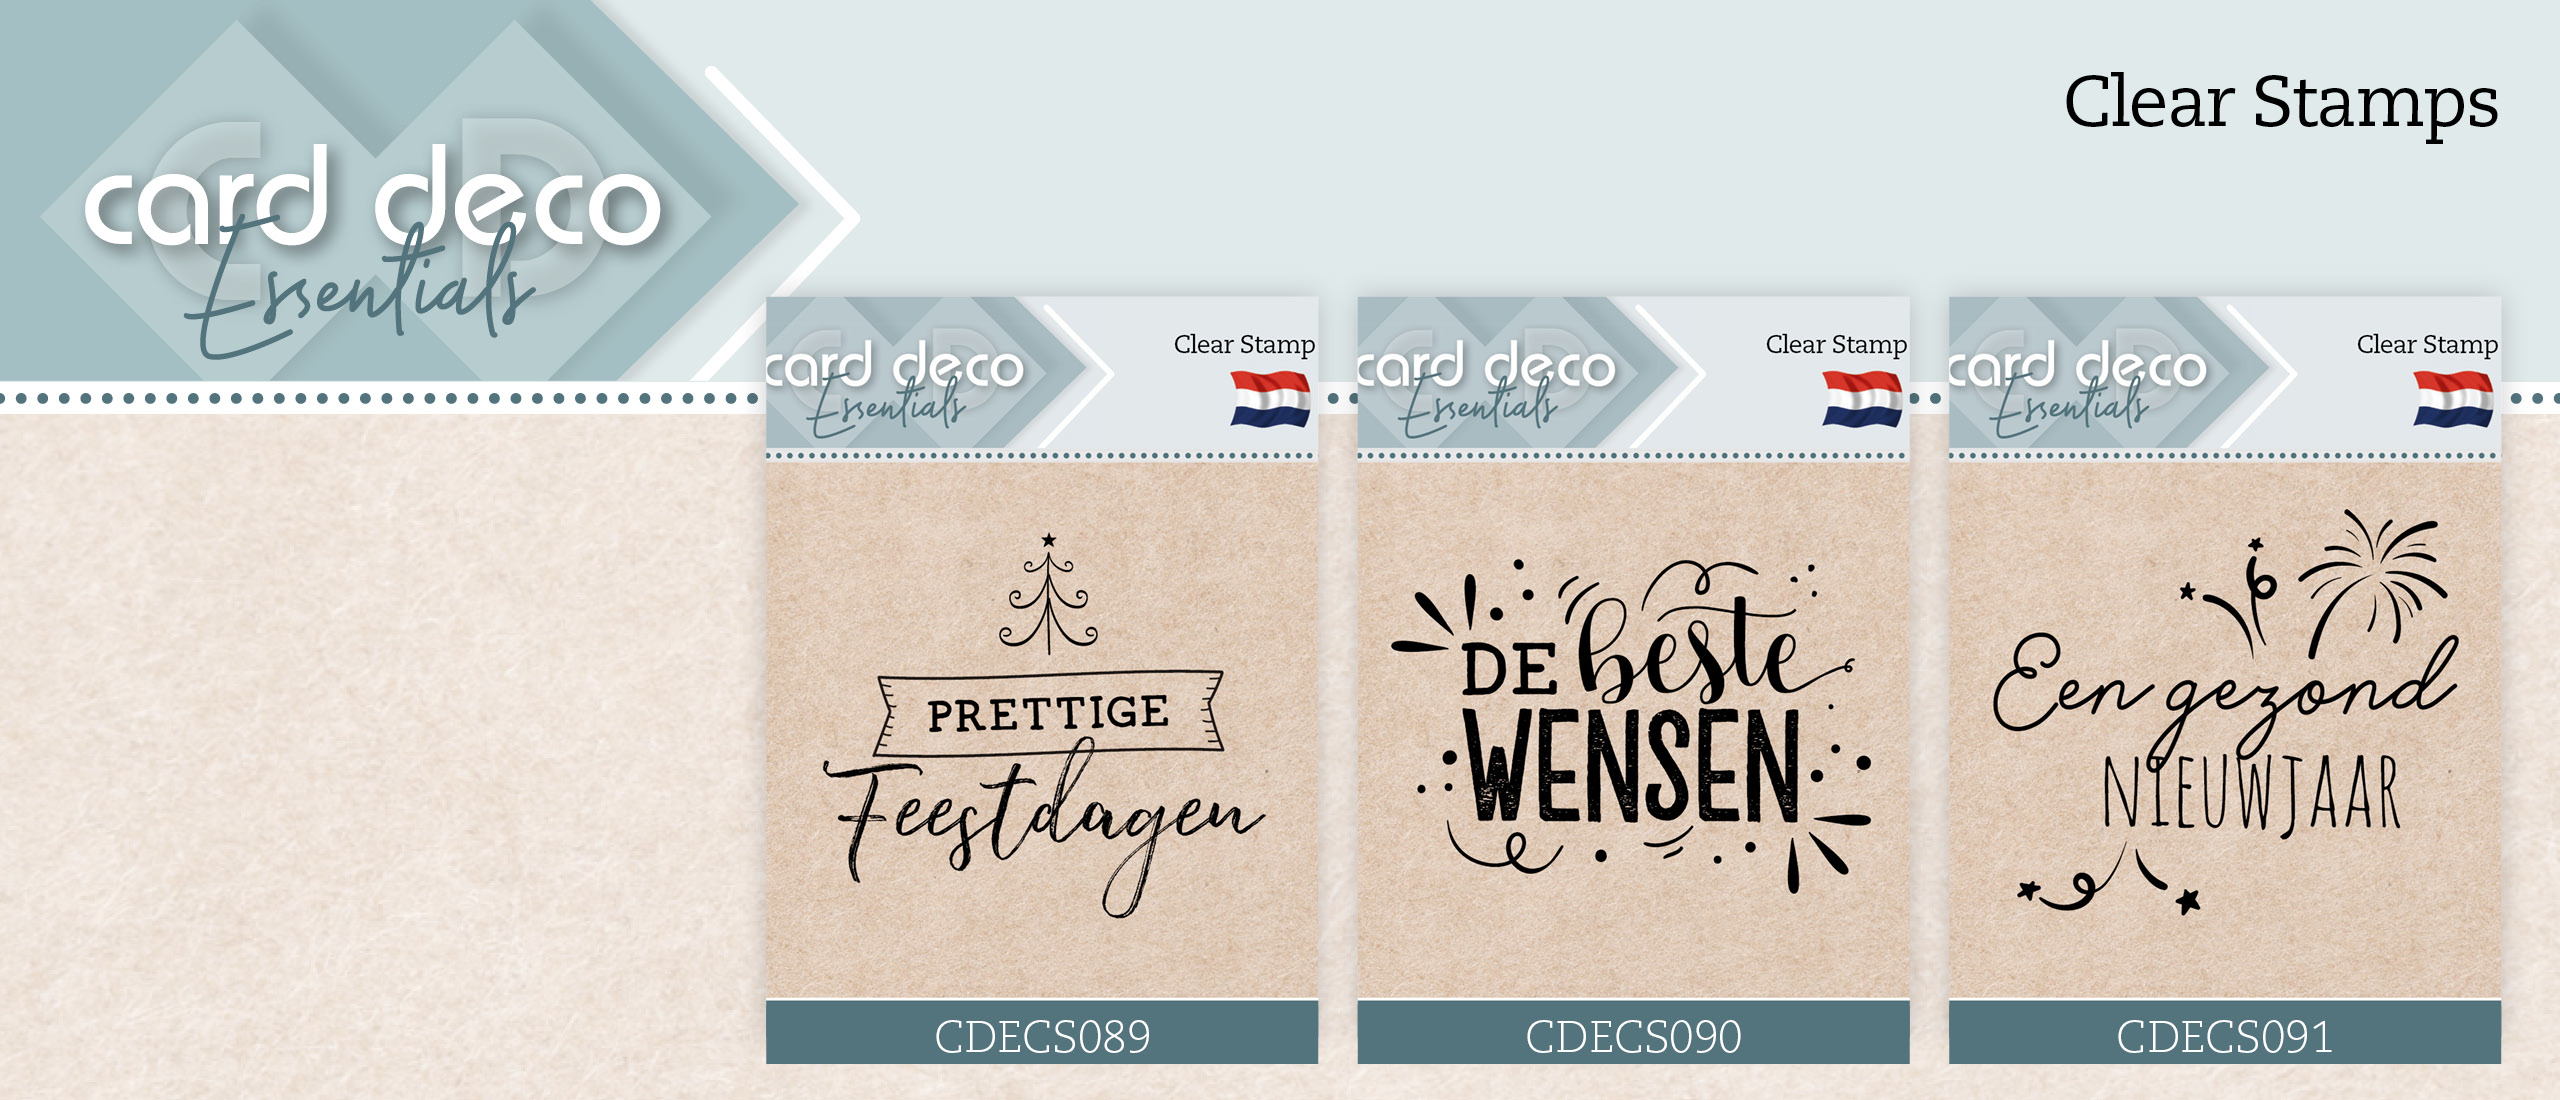 Nieuwe Clear Stamps van Card Deco Essentials (CDECS089, CDECS090 en CDECS091)